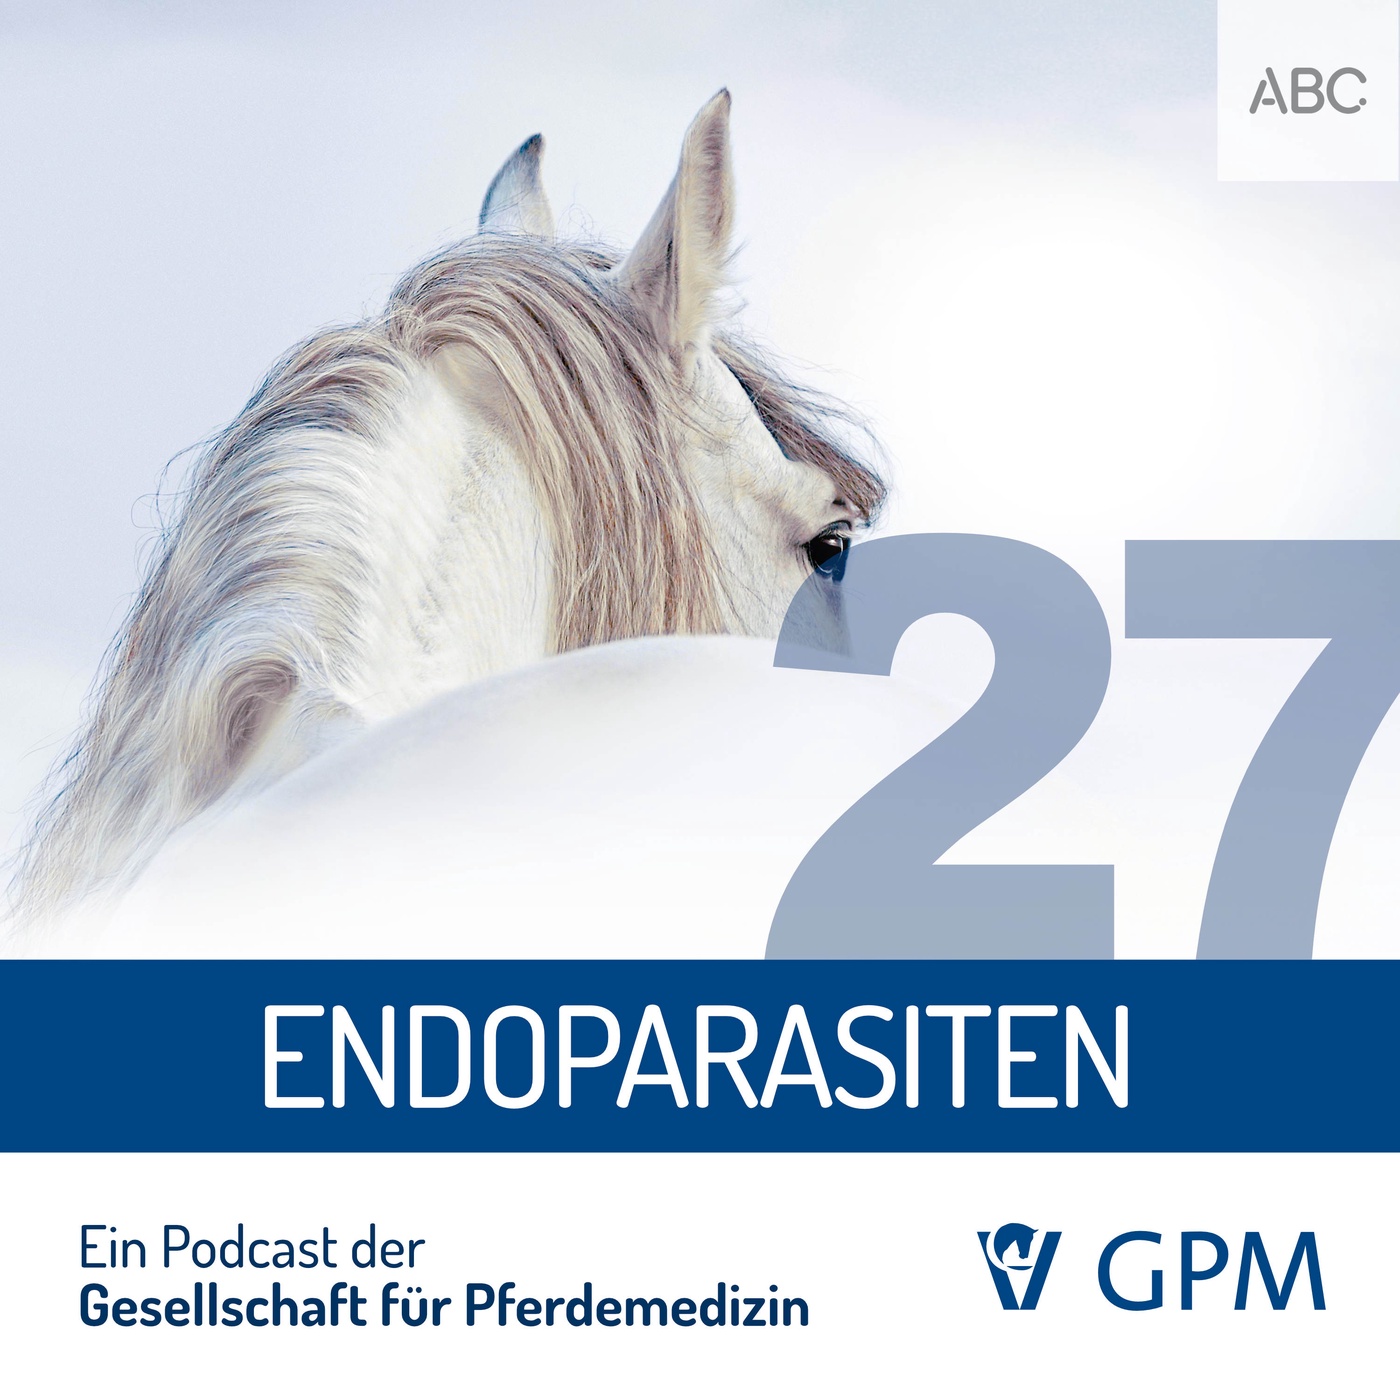 Endoparasiten beim Pferd